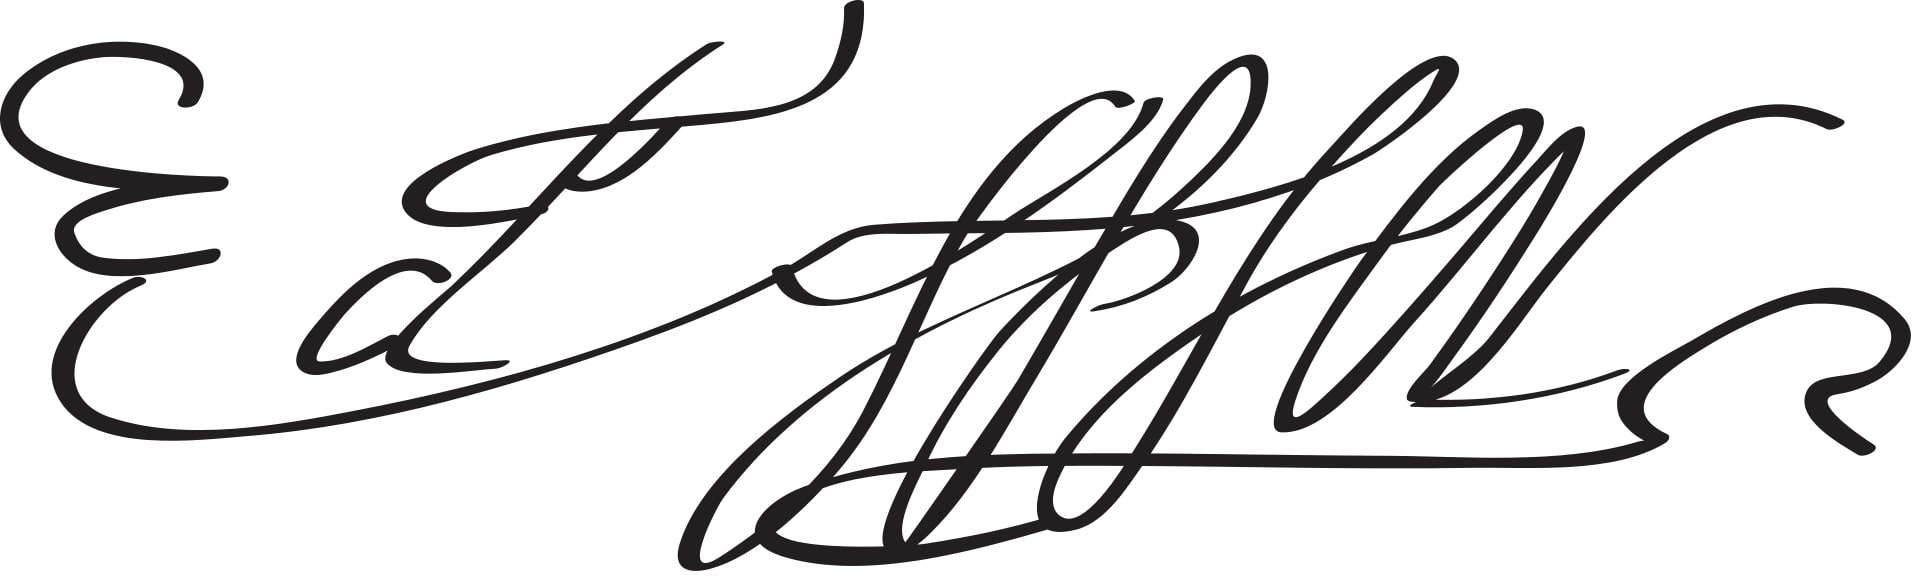 Edmund Spenser Signature